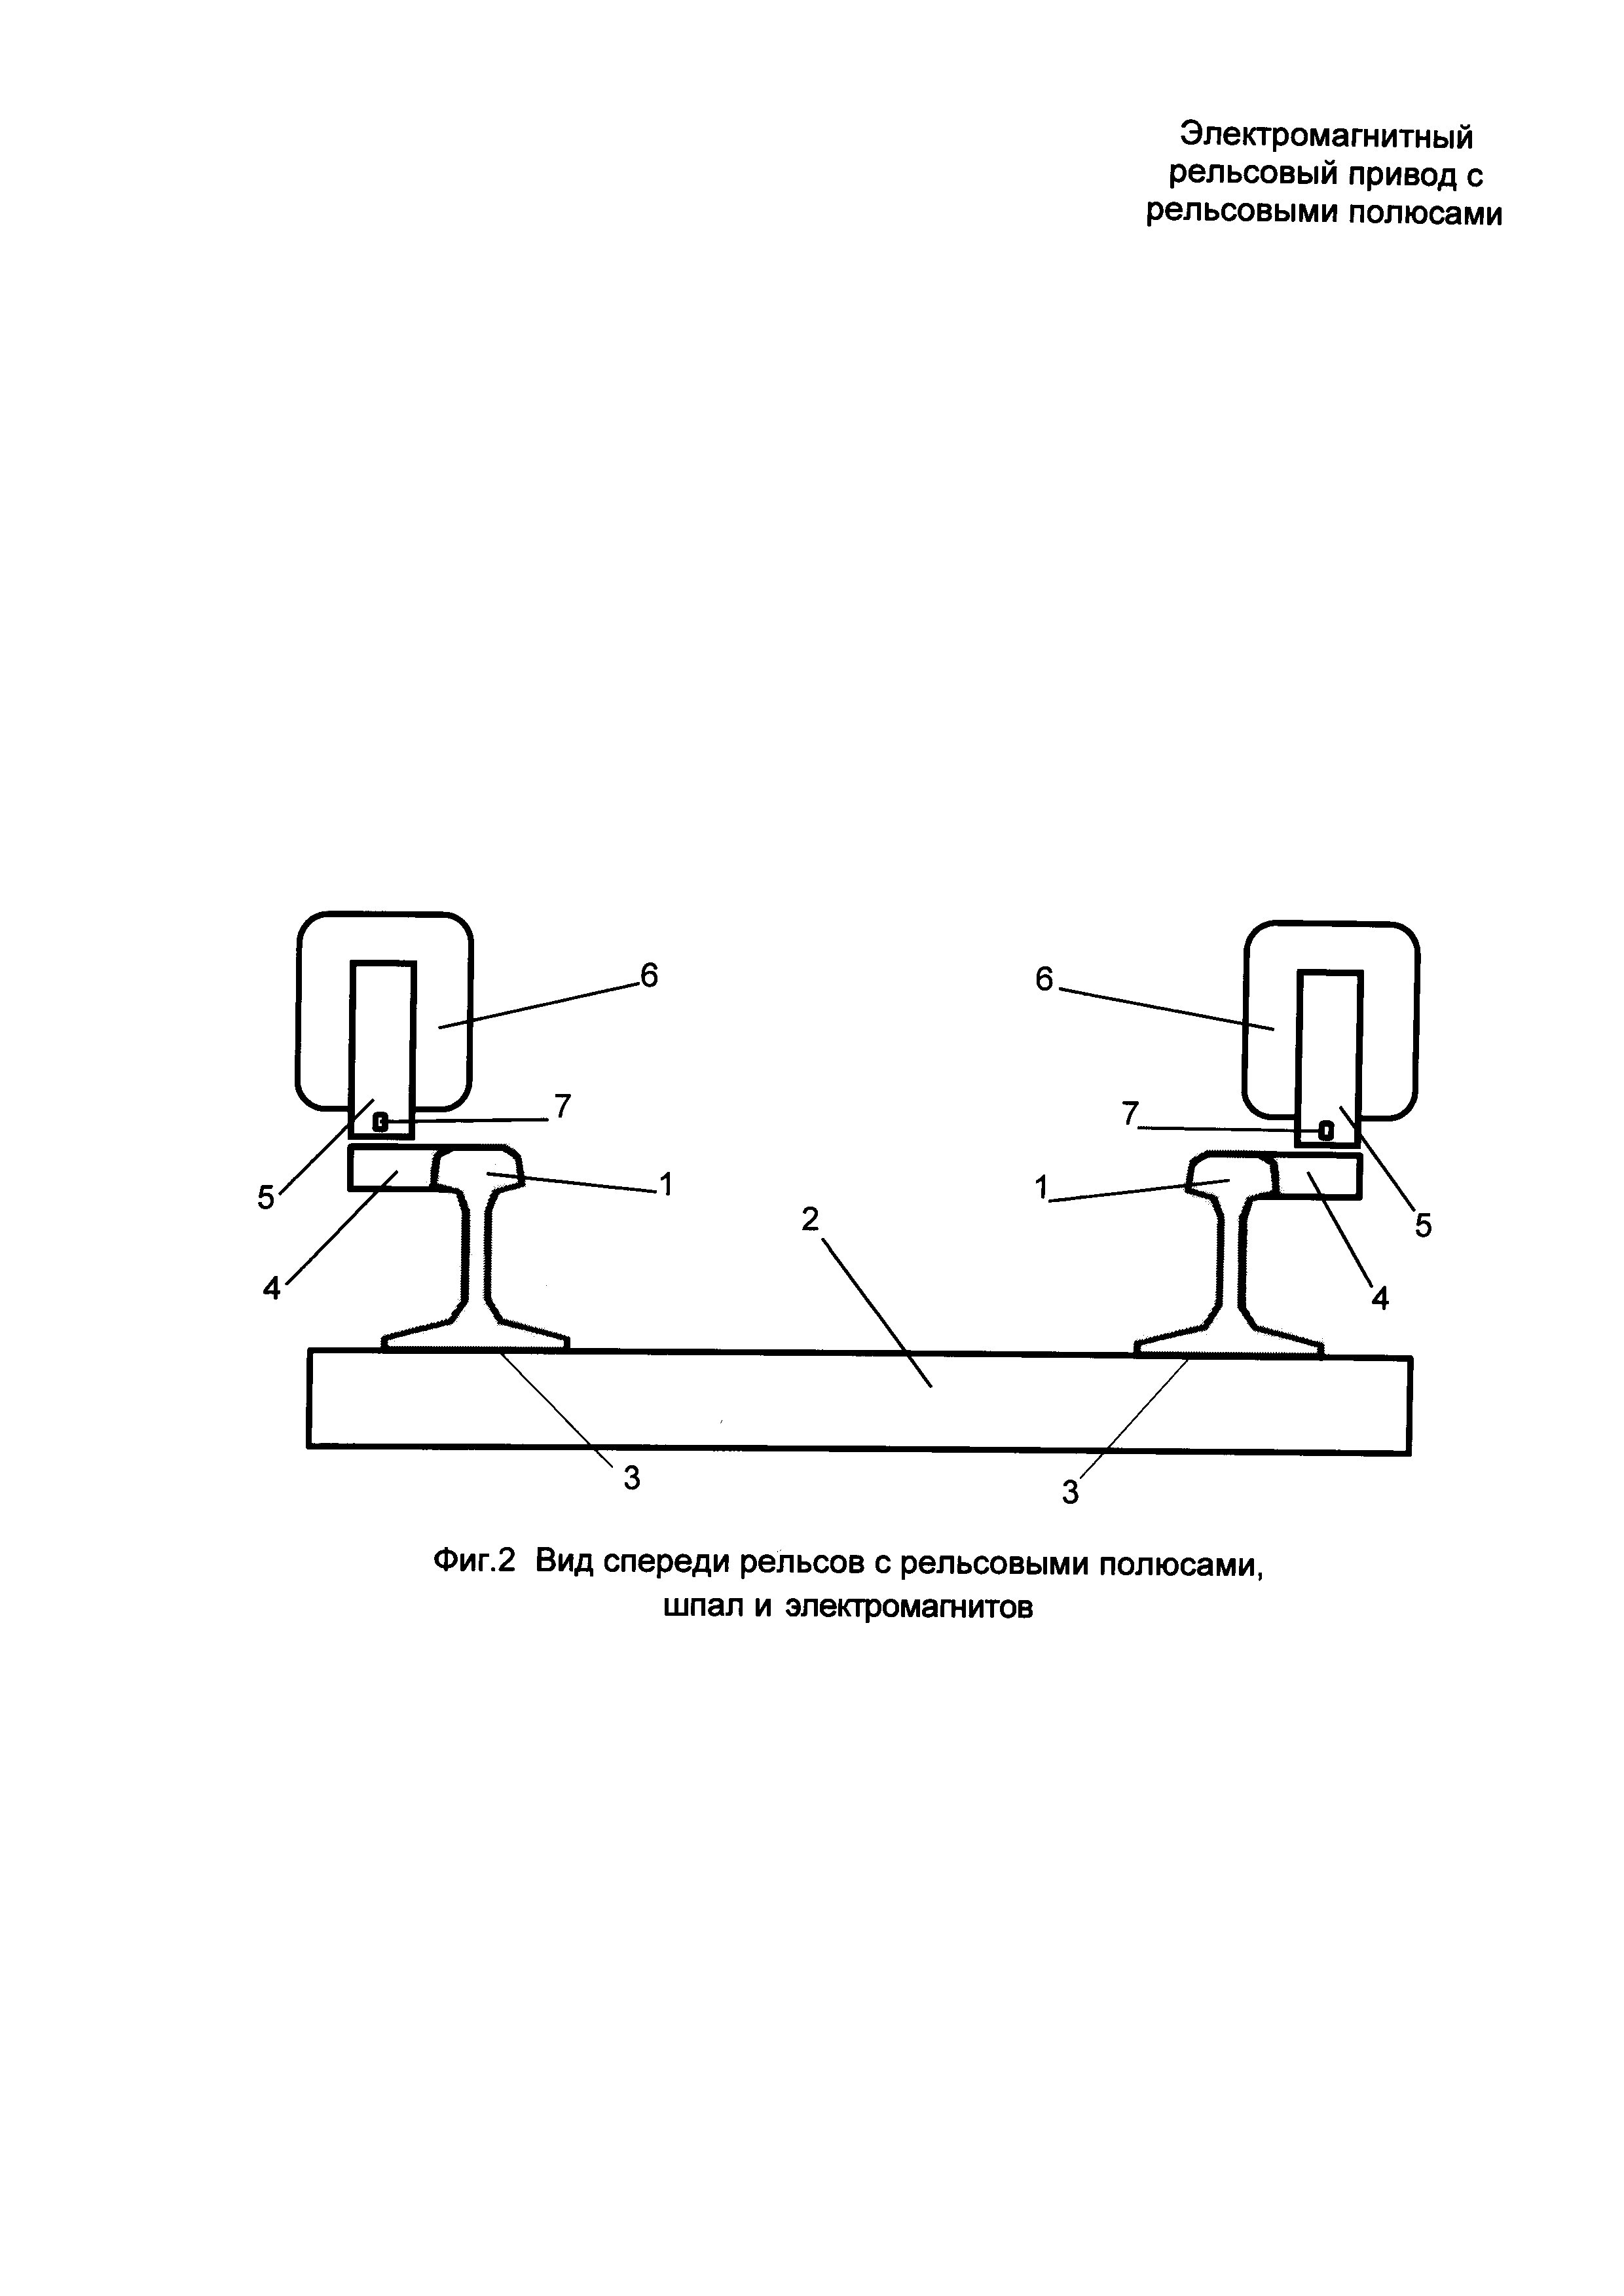 Электромагнитный рельсовый привод с рельсовыми полюсами